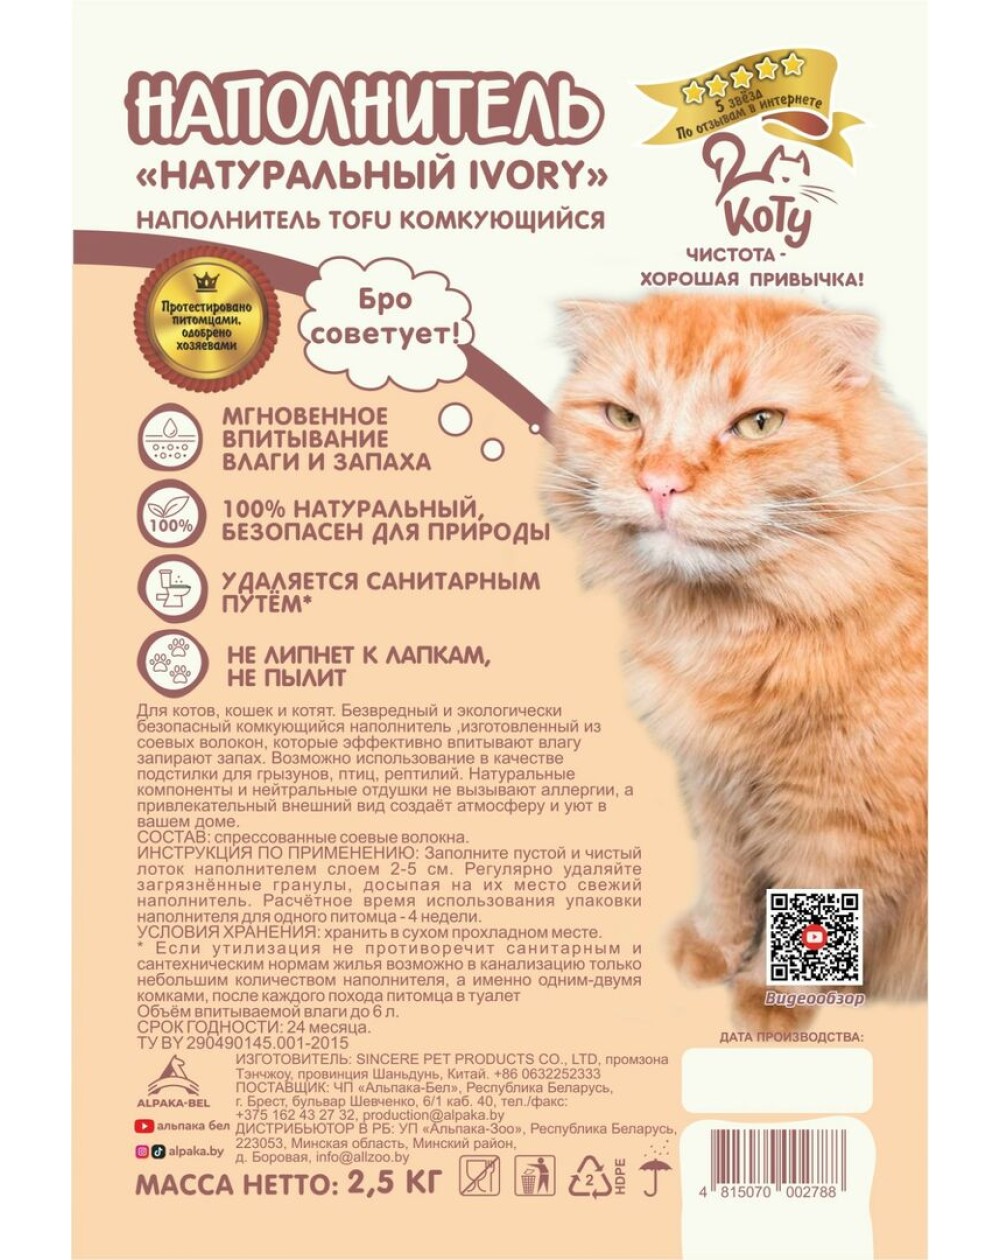 предпросмотр Наполнитель КОТУ TOFU для кошек, натуральный IVORY, 2,5 кг 2